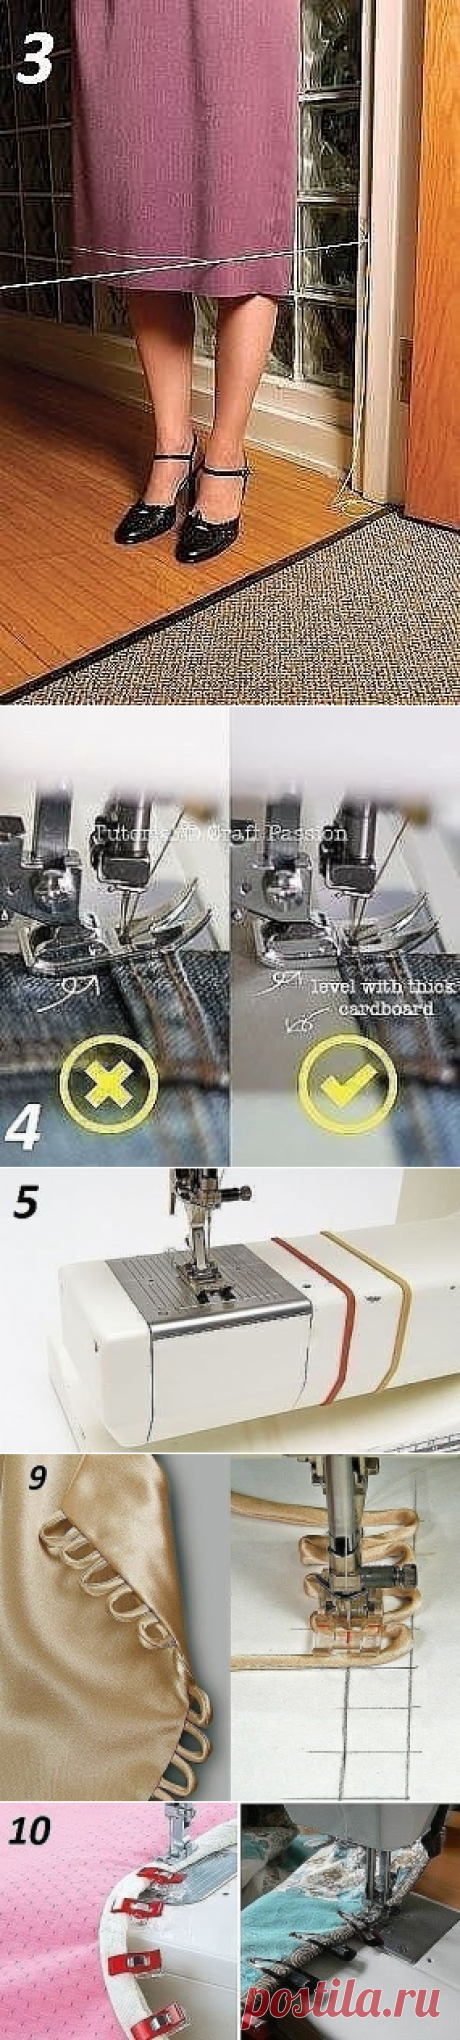 10 Полезных швейных приспособлений